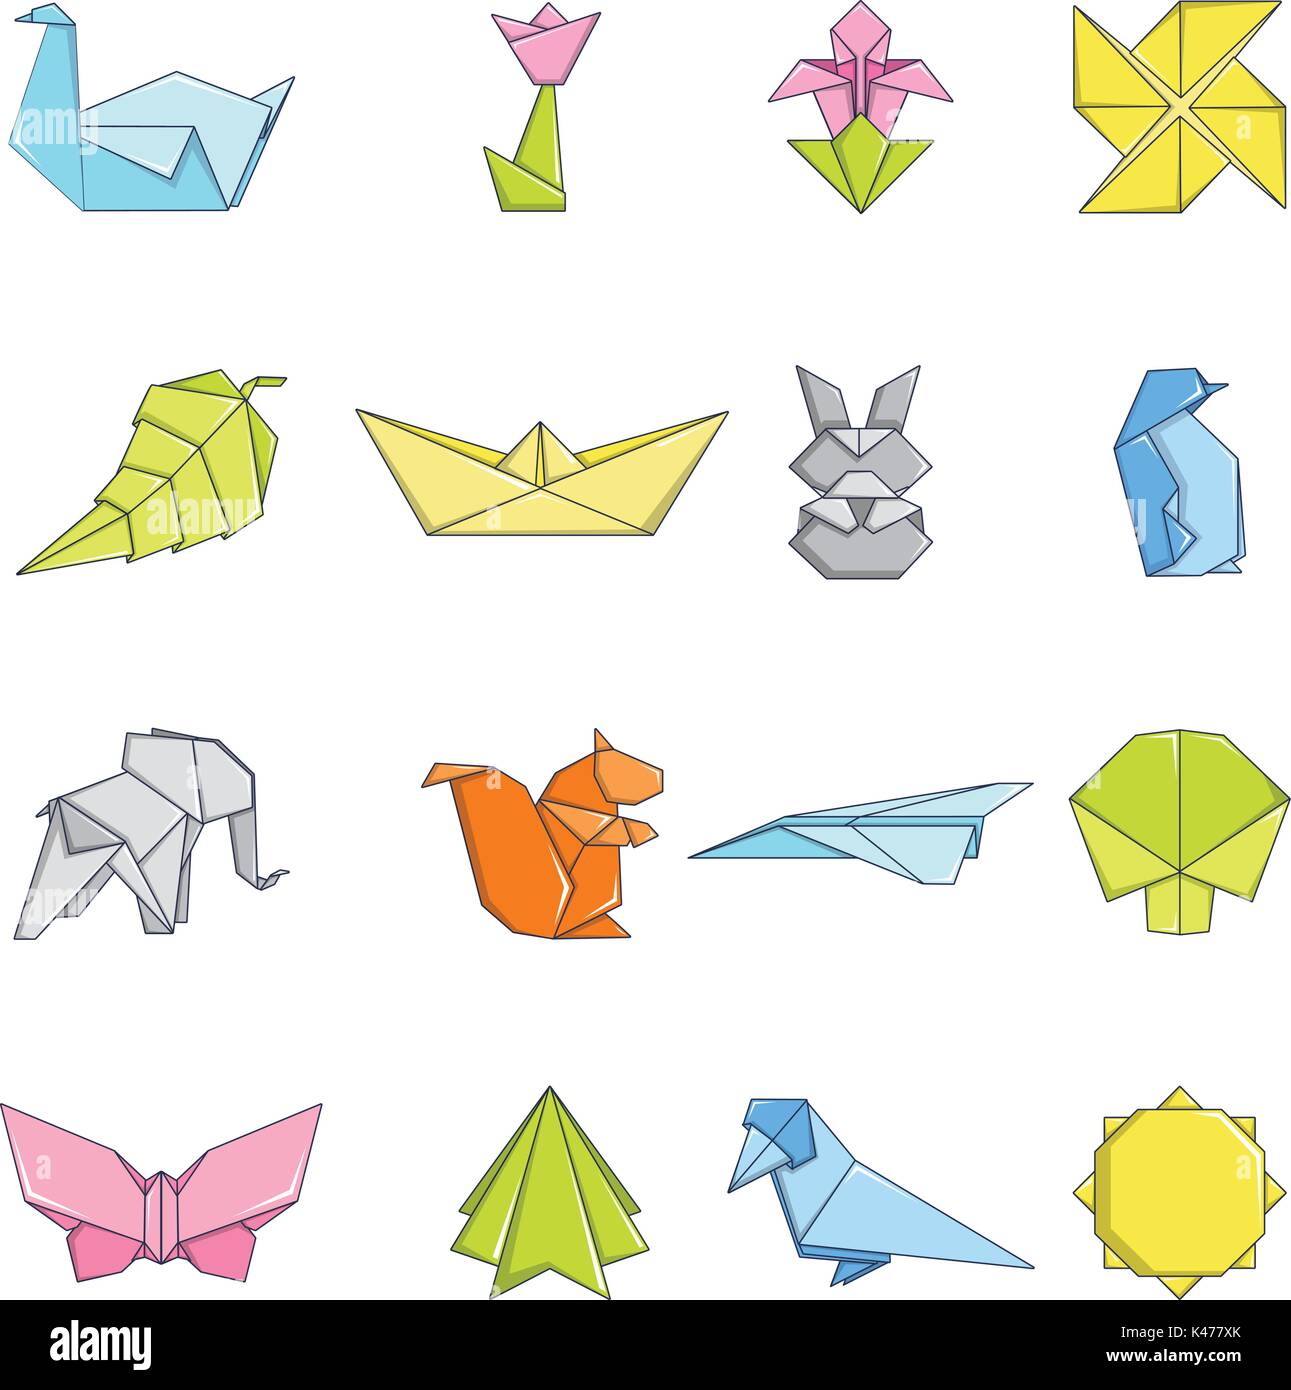 Detalle 18+ imagen dibujos de origami